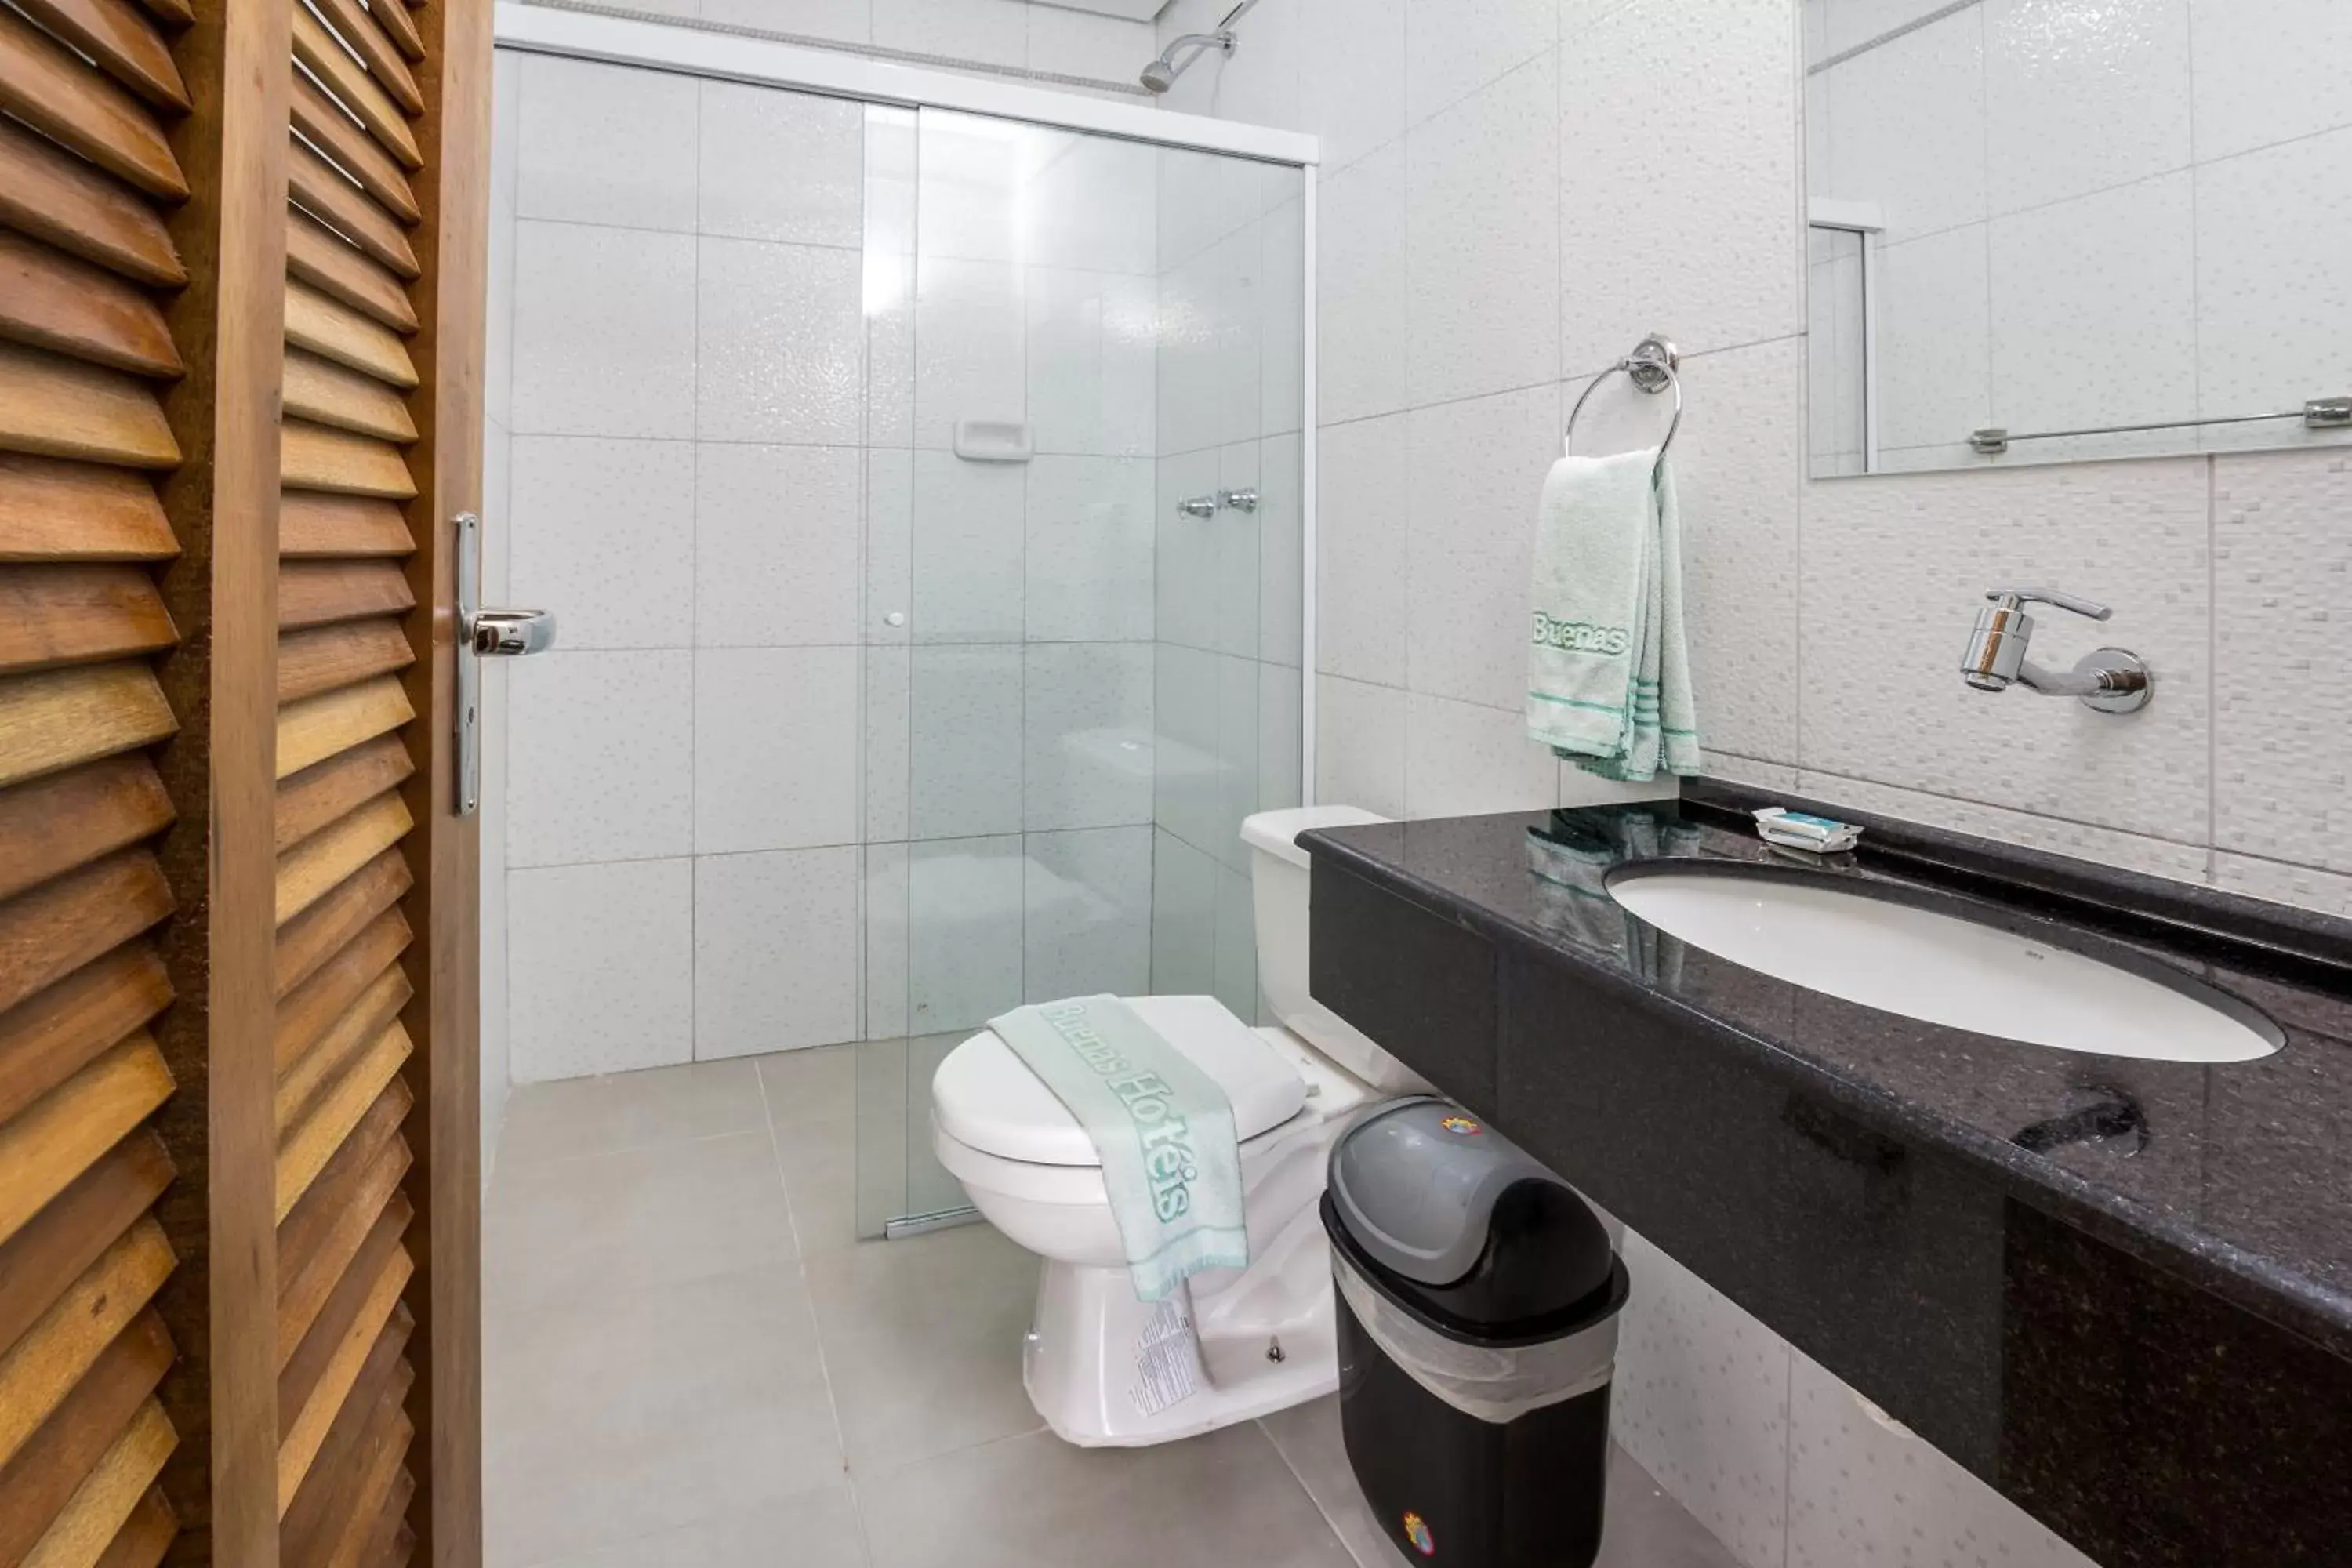 Bathroom in Hotel America do Sul